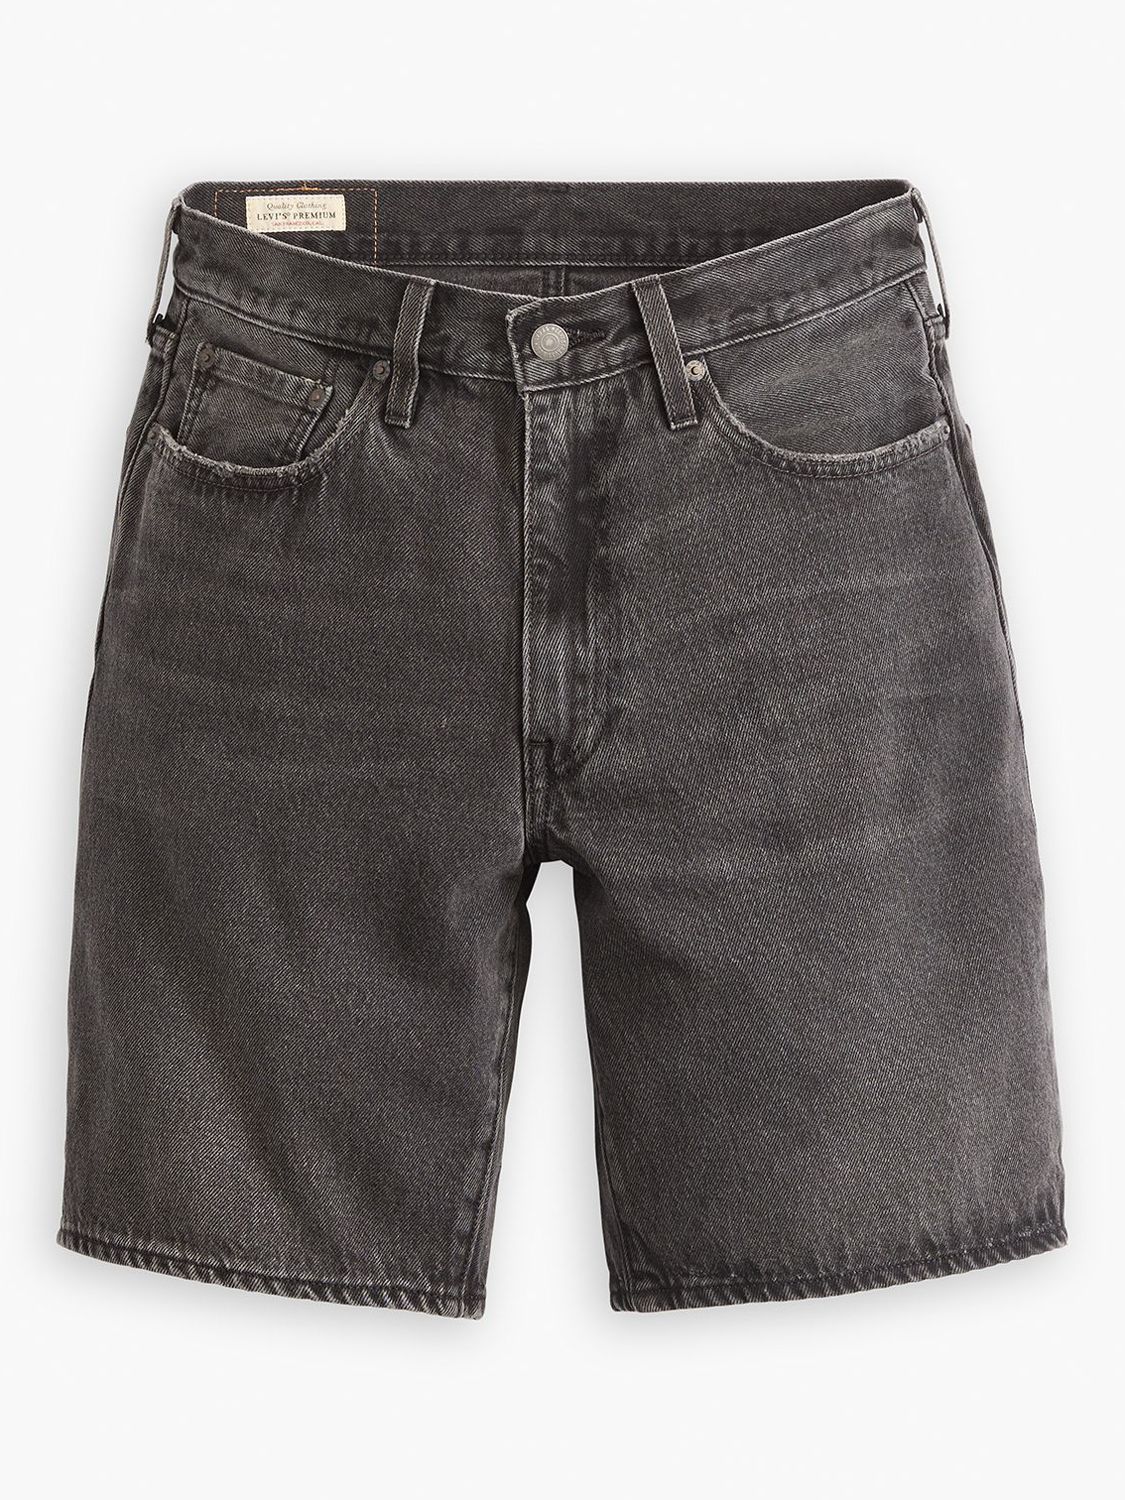 Levi's 468 Loose Shorts, Black, 30R